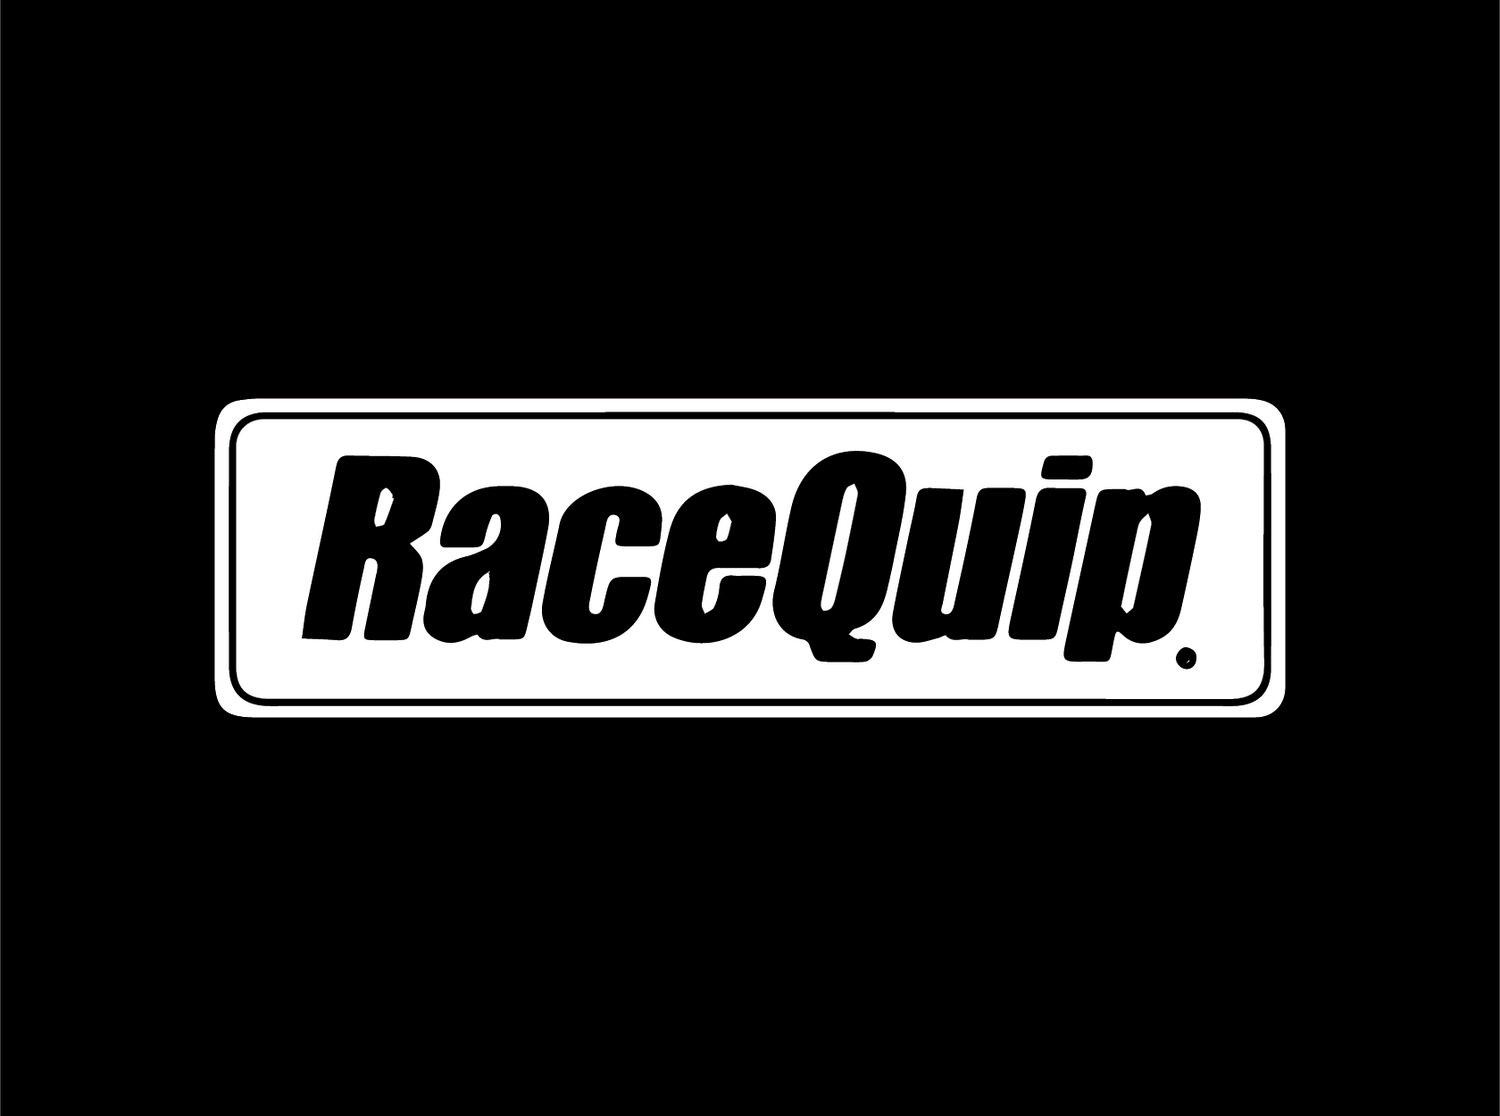 Racequip